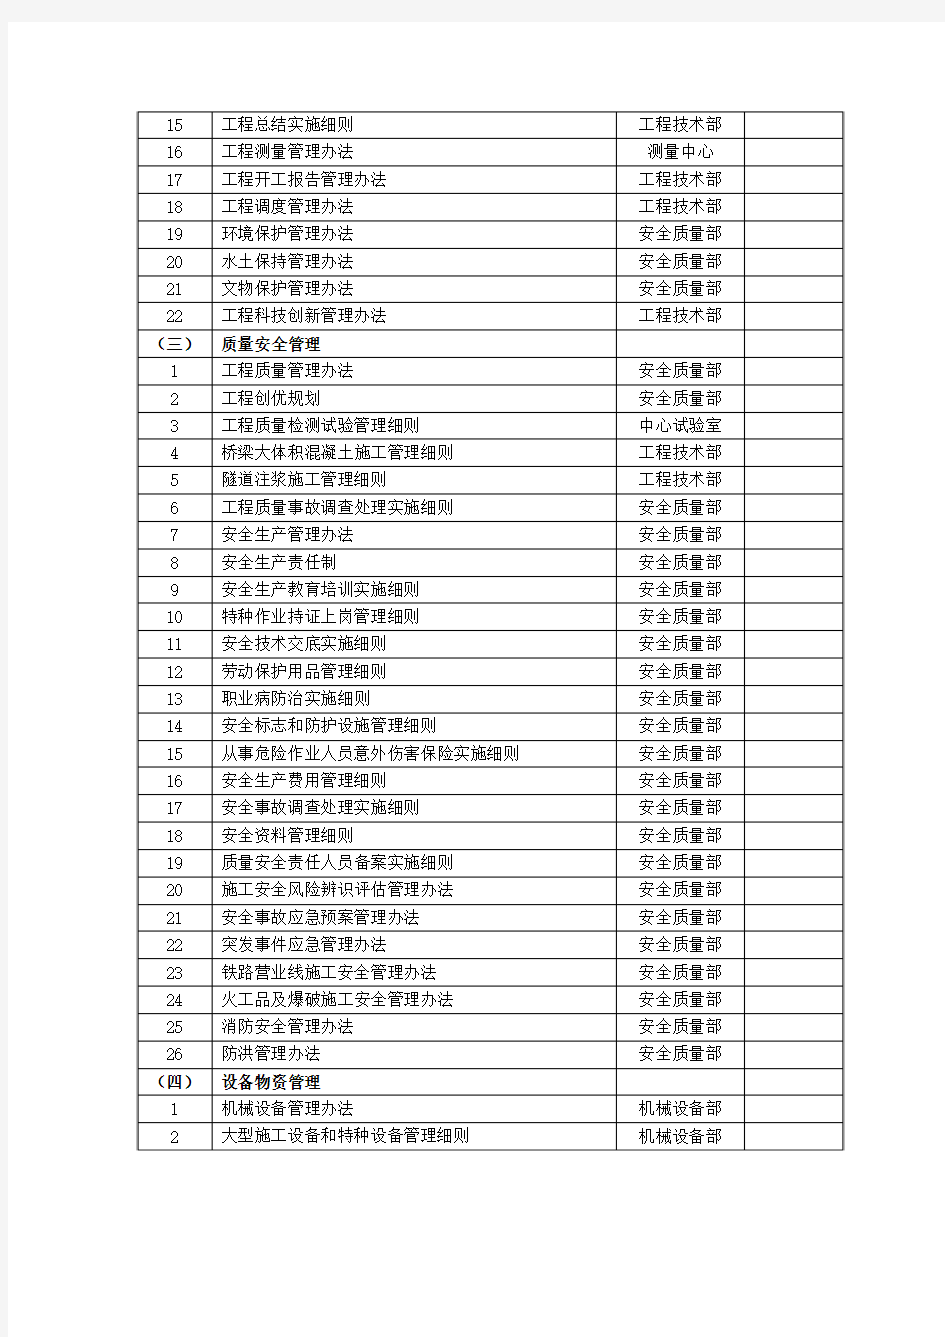 中铁大桥局赣龙铁路GL-2标标准化管理文件编写分工表